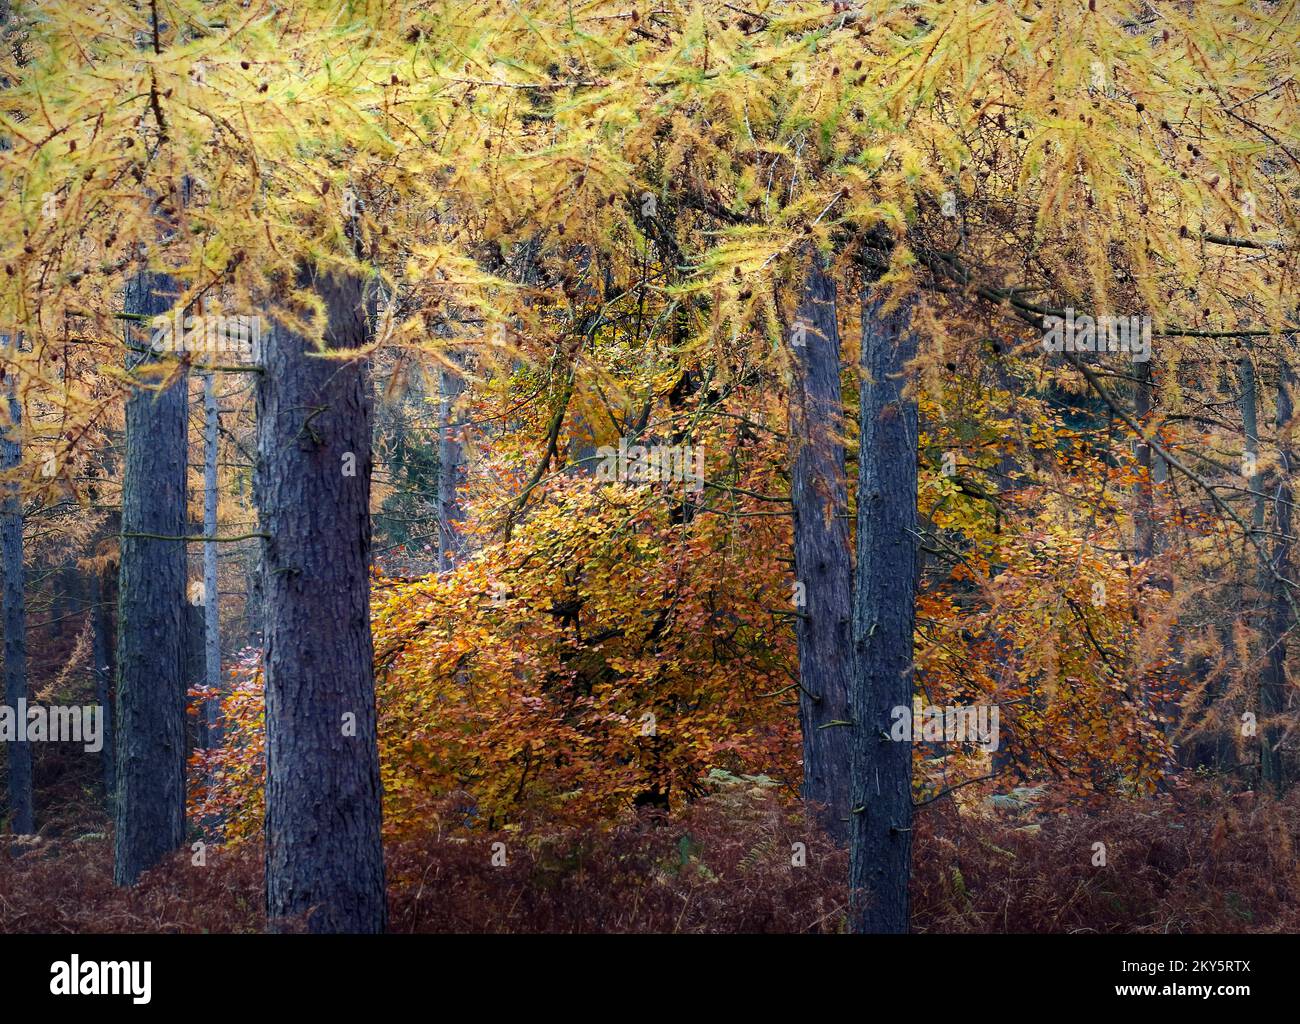 Waldgebiete im Herbst mit Farbtönen und Farbtönen von Larch Trees im Cannock Chase Forest, einem ausgewiesenen Gebiet von herausragender natürlicher Schönheit Stockfoto